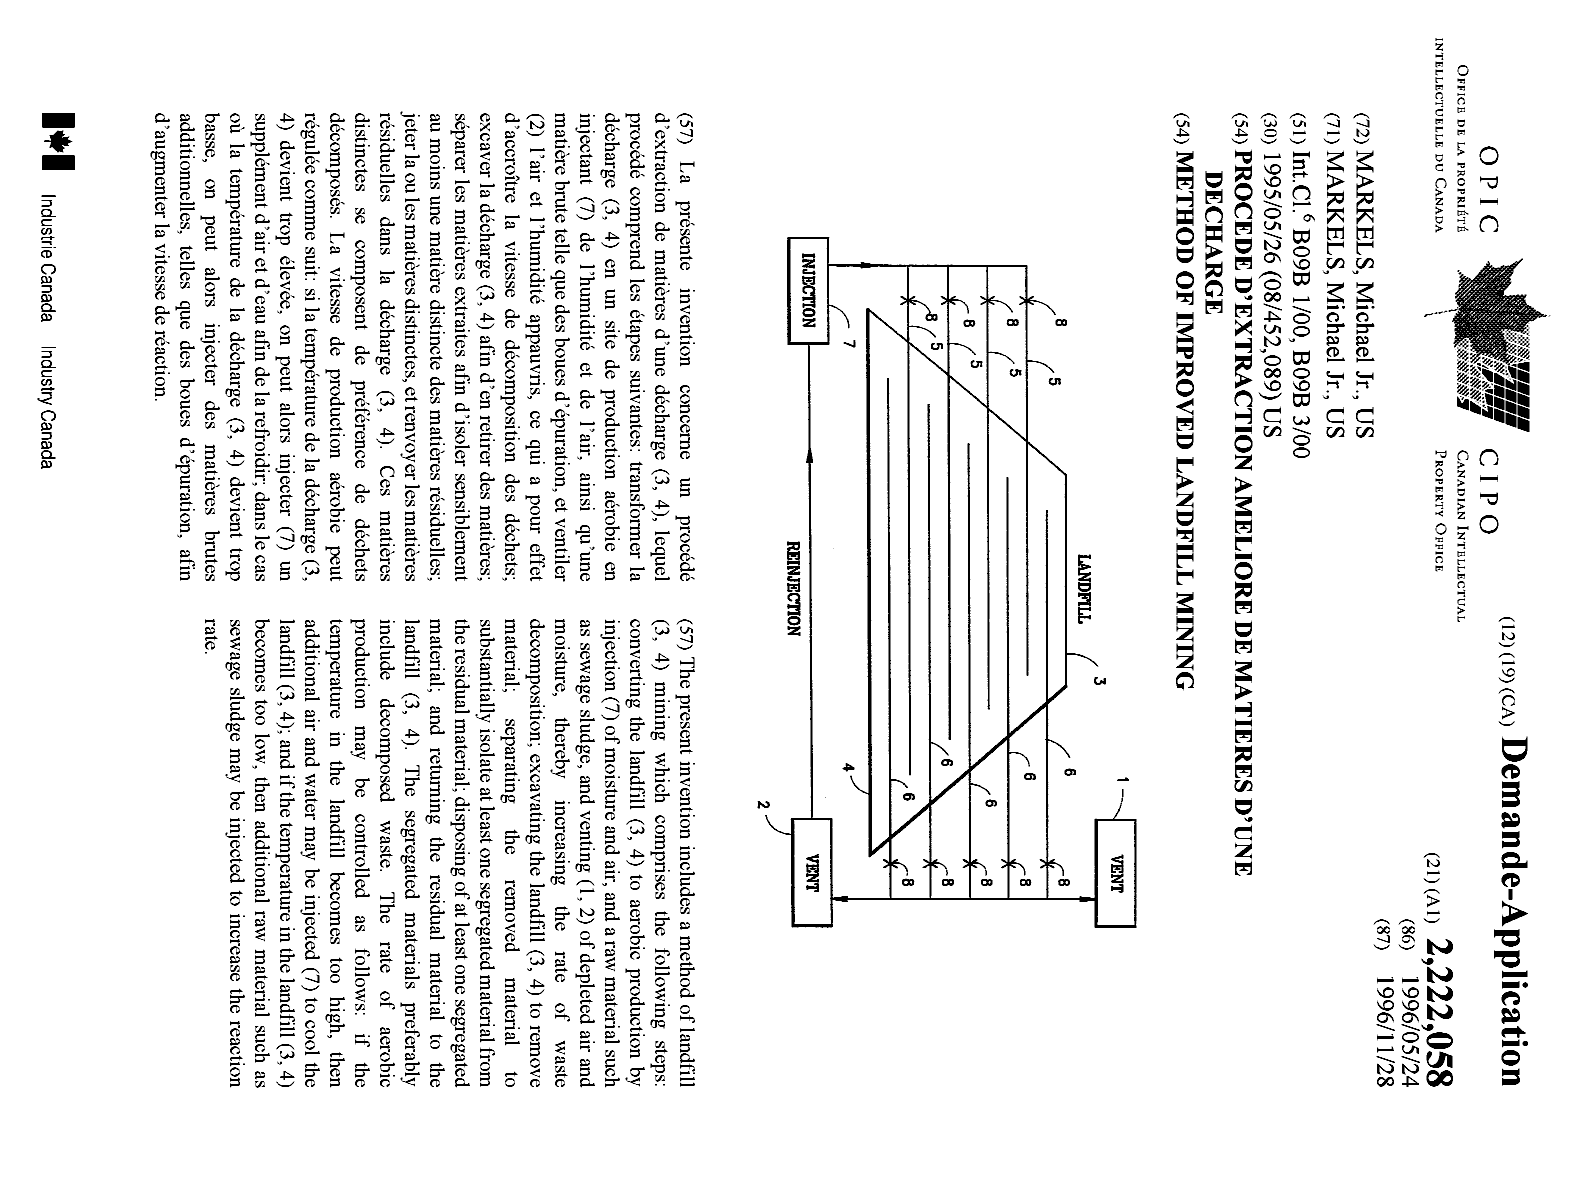 Document de brevet canadien 2222058. Page couverture 19980318. Image 1 de 1